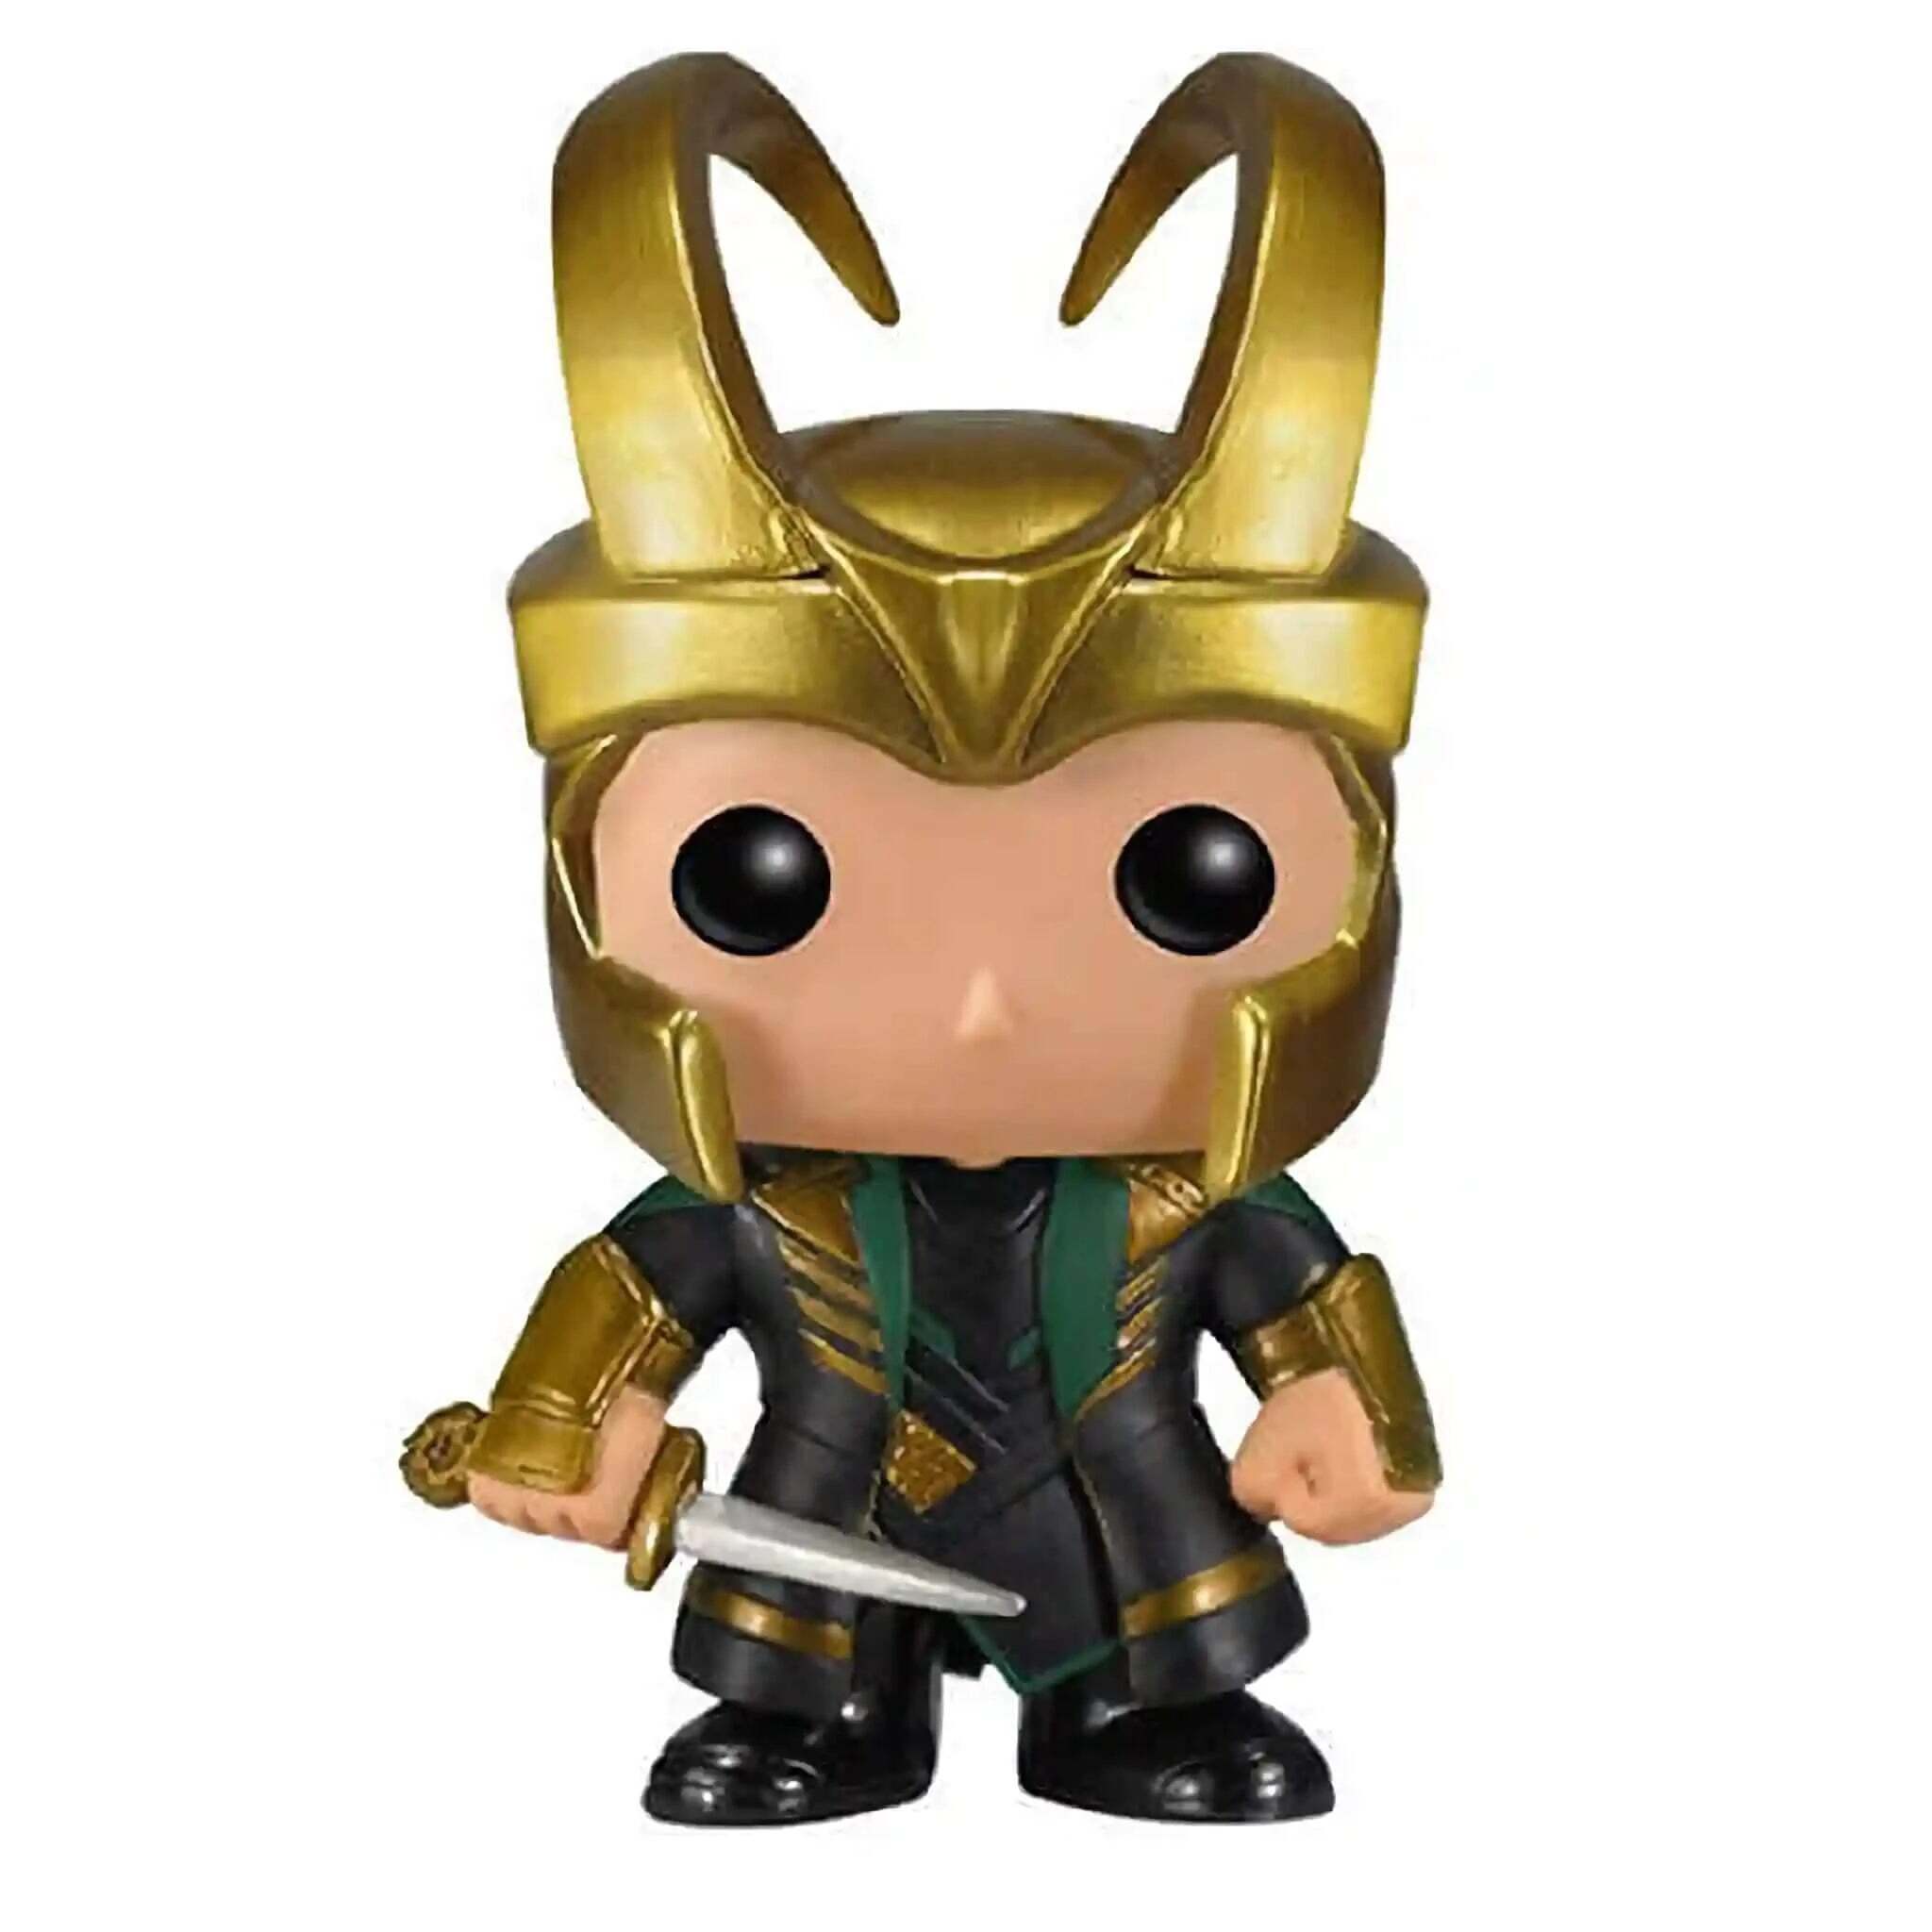 Loki (Helmet) Funko Pop!